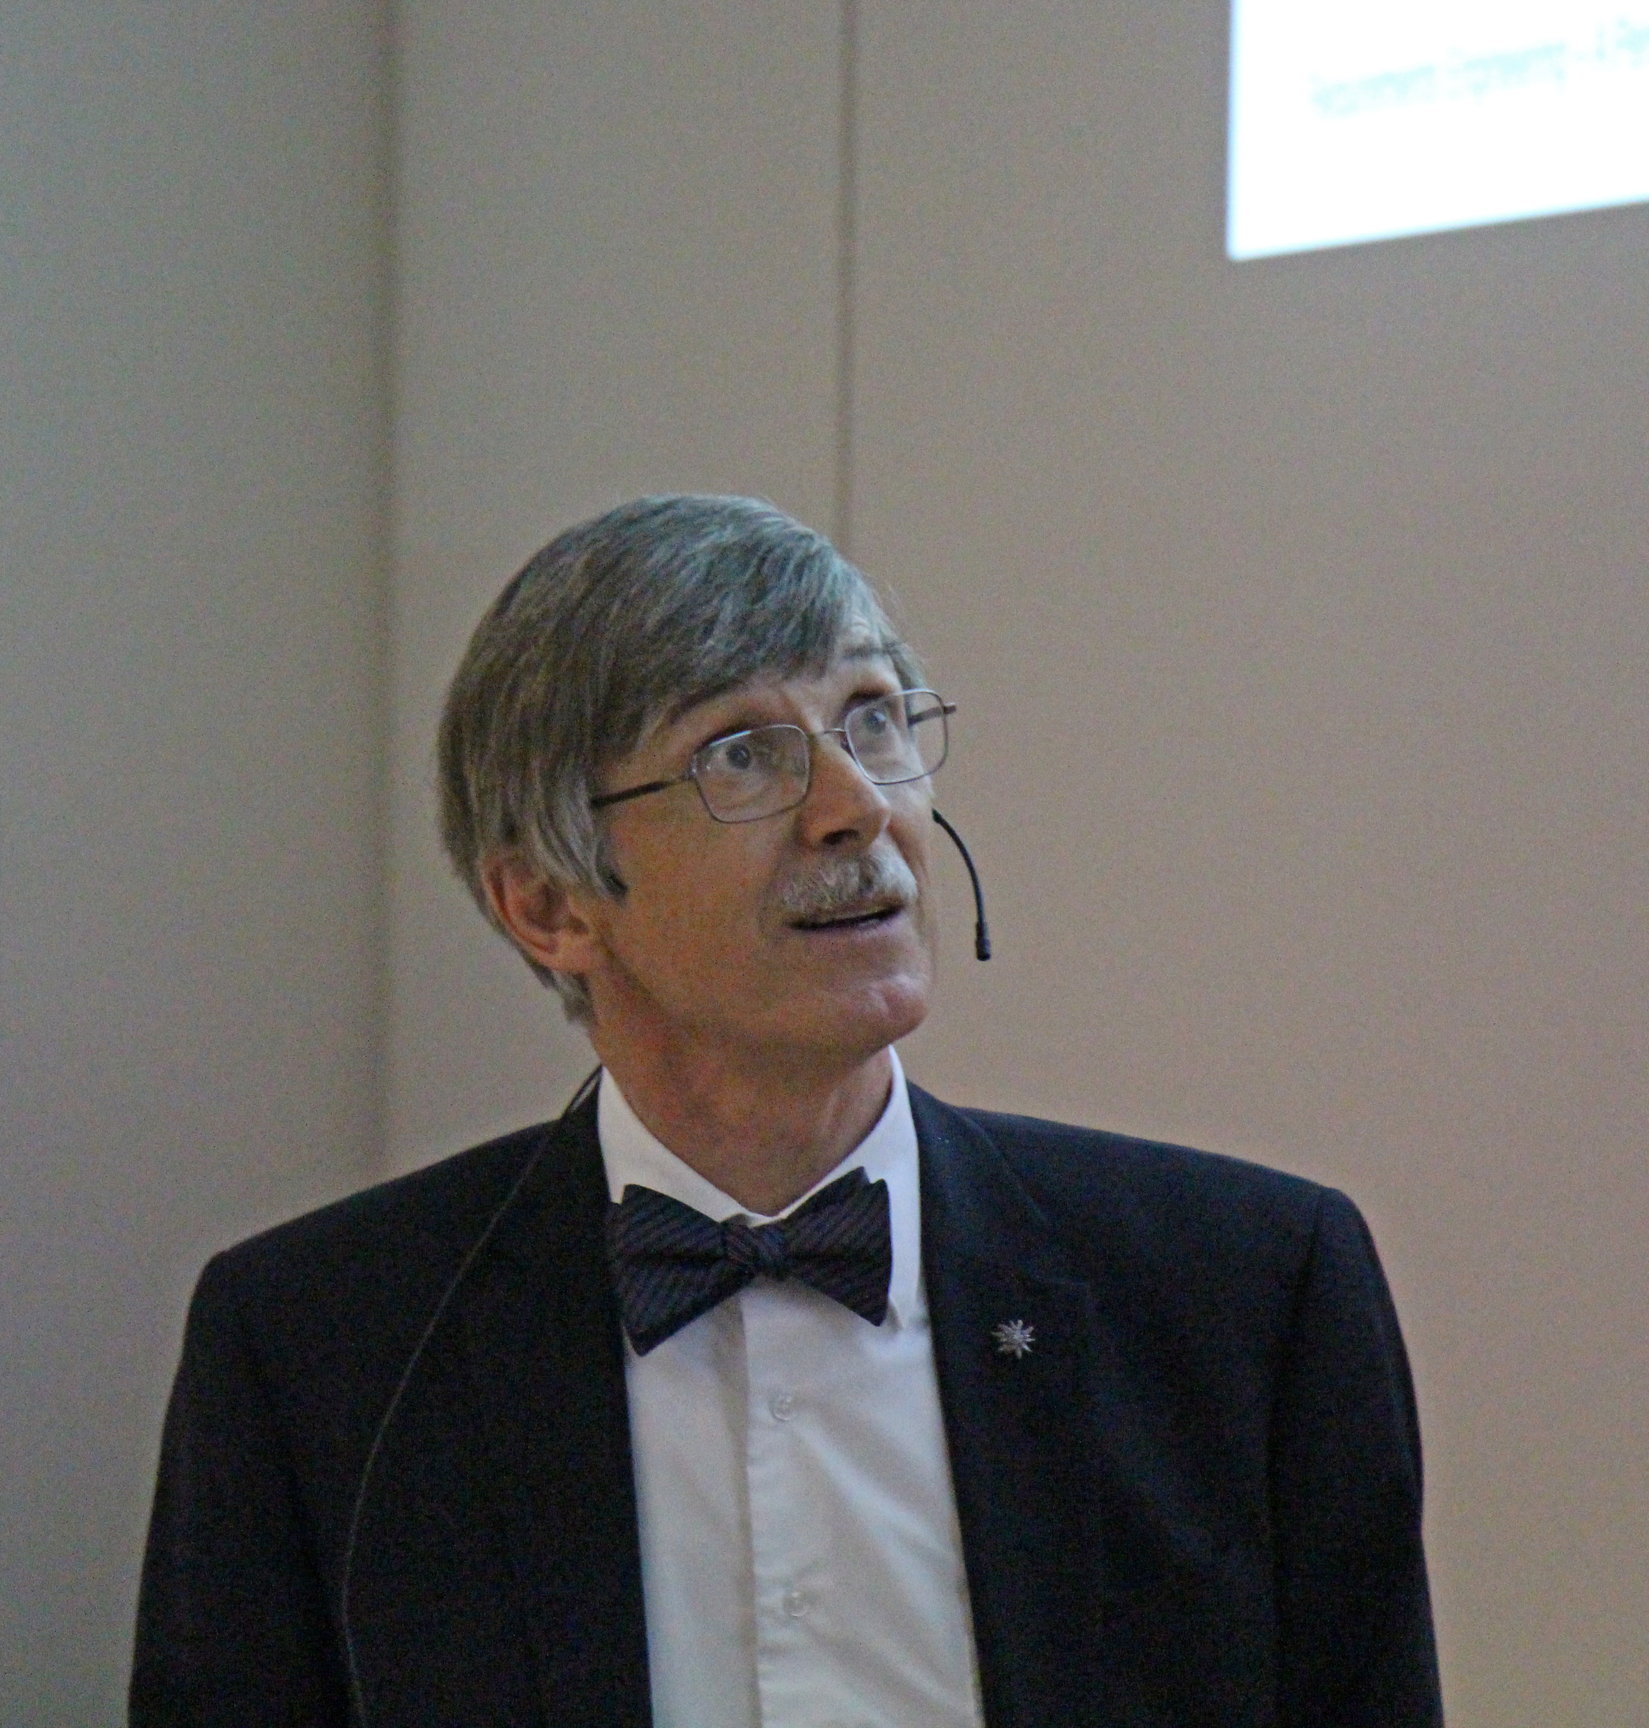 Martin Glinz giving his farewell lecture